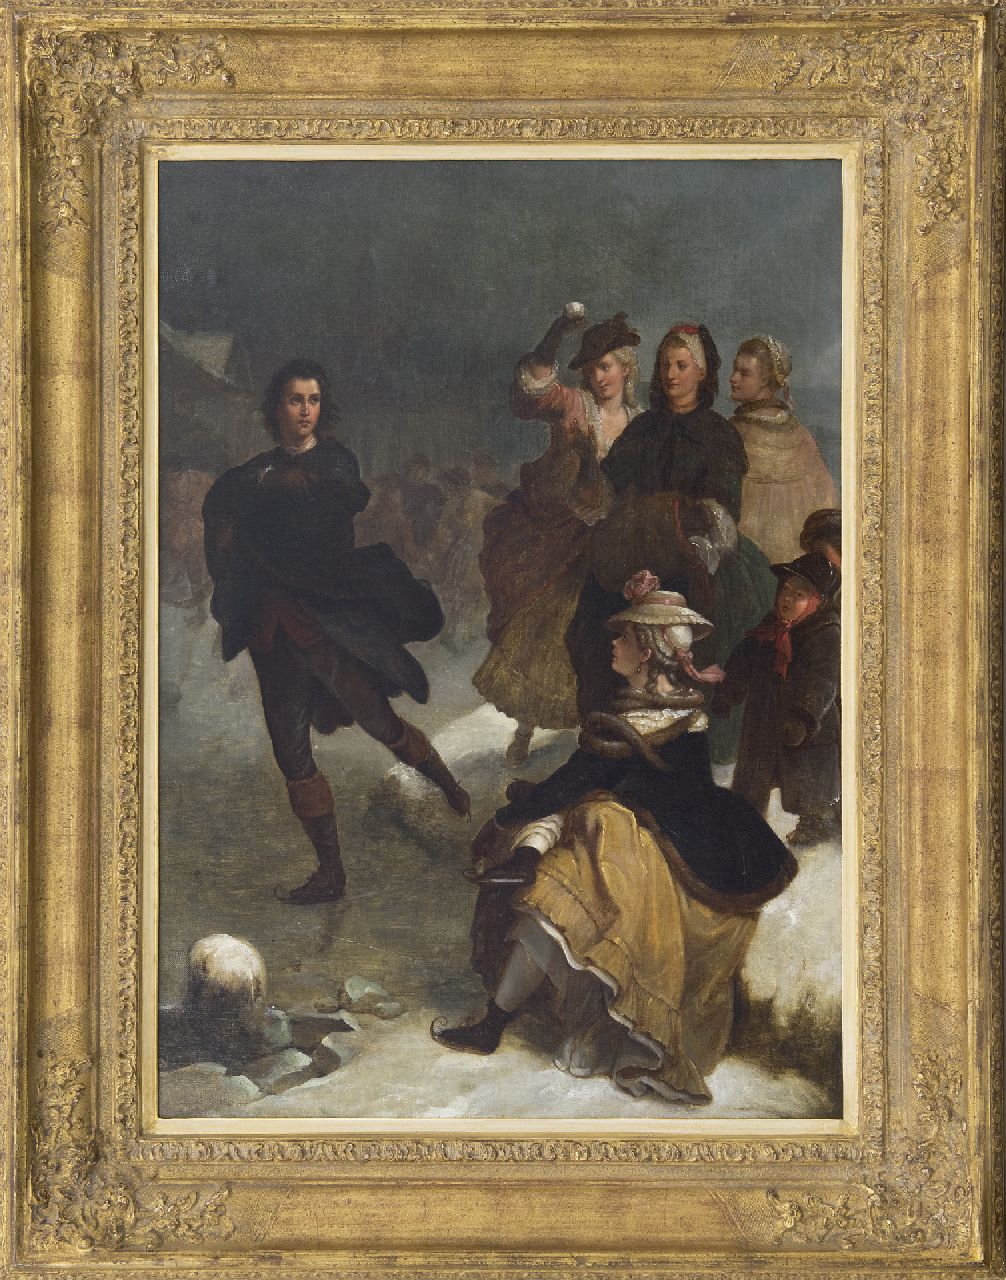 Duitse School (naar Wilhelm von Kaulbach)   | Duitse School (naar Wilhelm von Kaulbach), Goethe as a skater on the Main near Frankfurt, oil on canvas 63.8 x 46.0 cm, painted ca. 1870